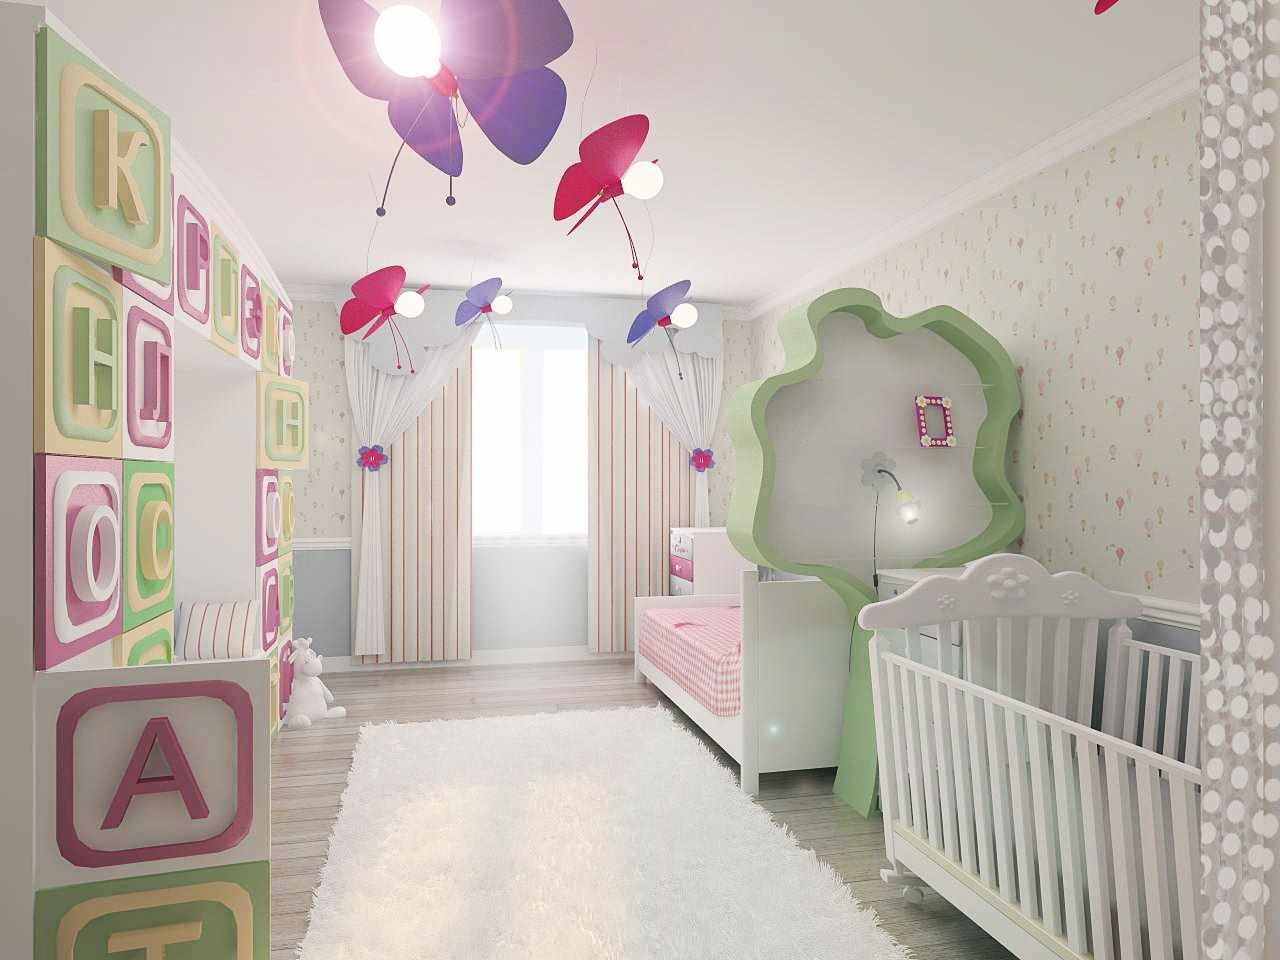 Çocuk odası için güzel bir stil fikri